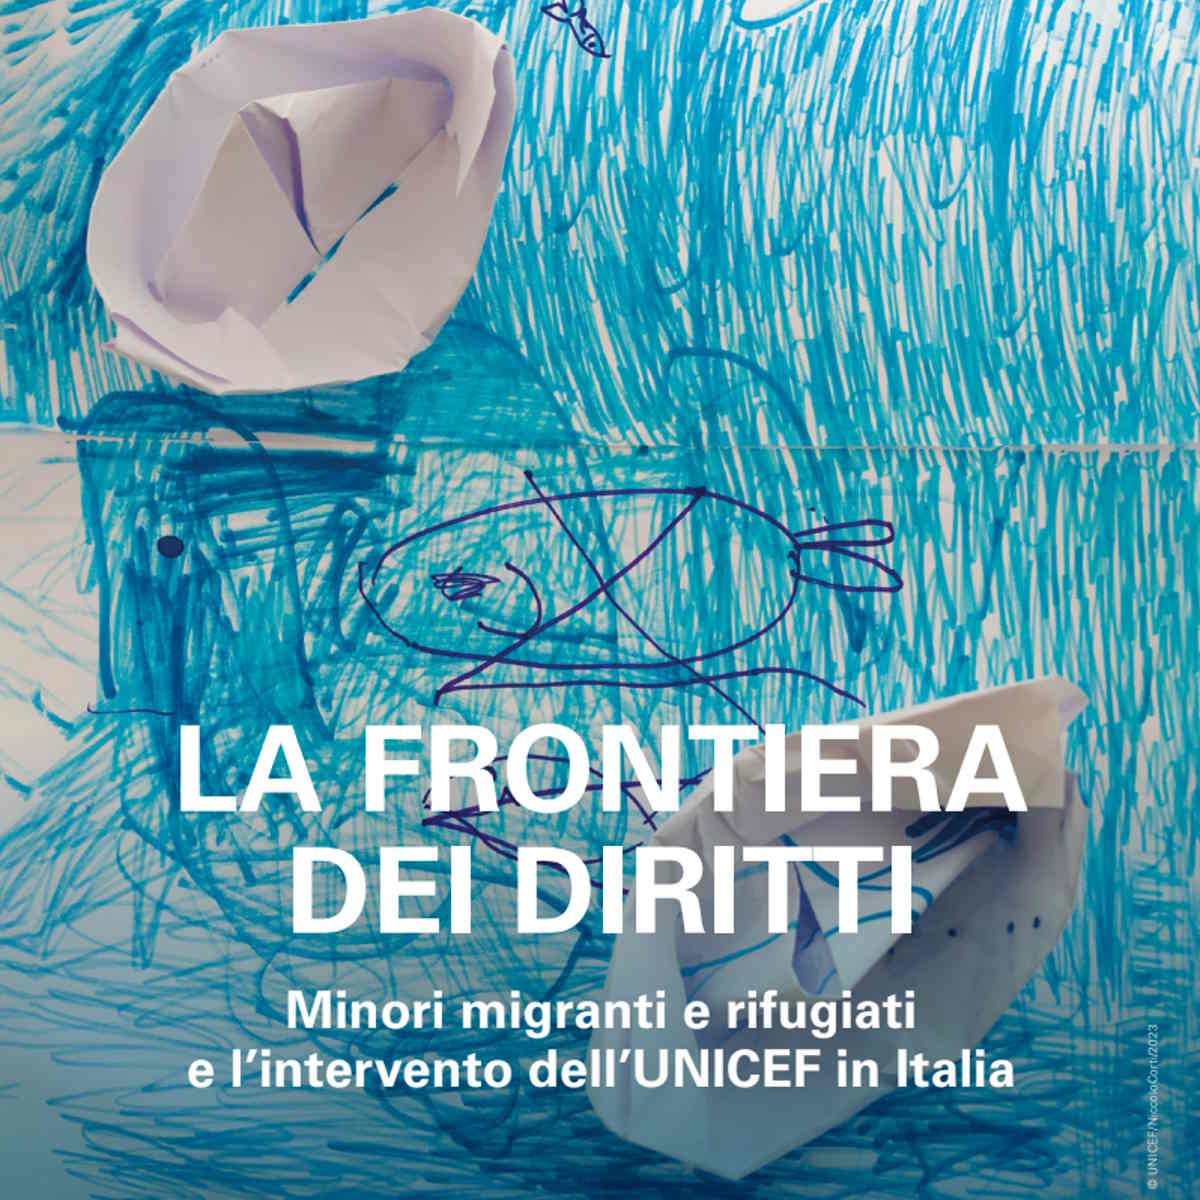 UNICEF presenta la Frontiera dei Diritti in occasione della Giornata Internazionale sui migranti